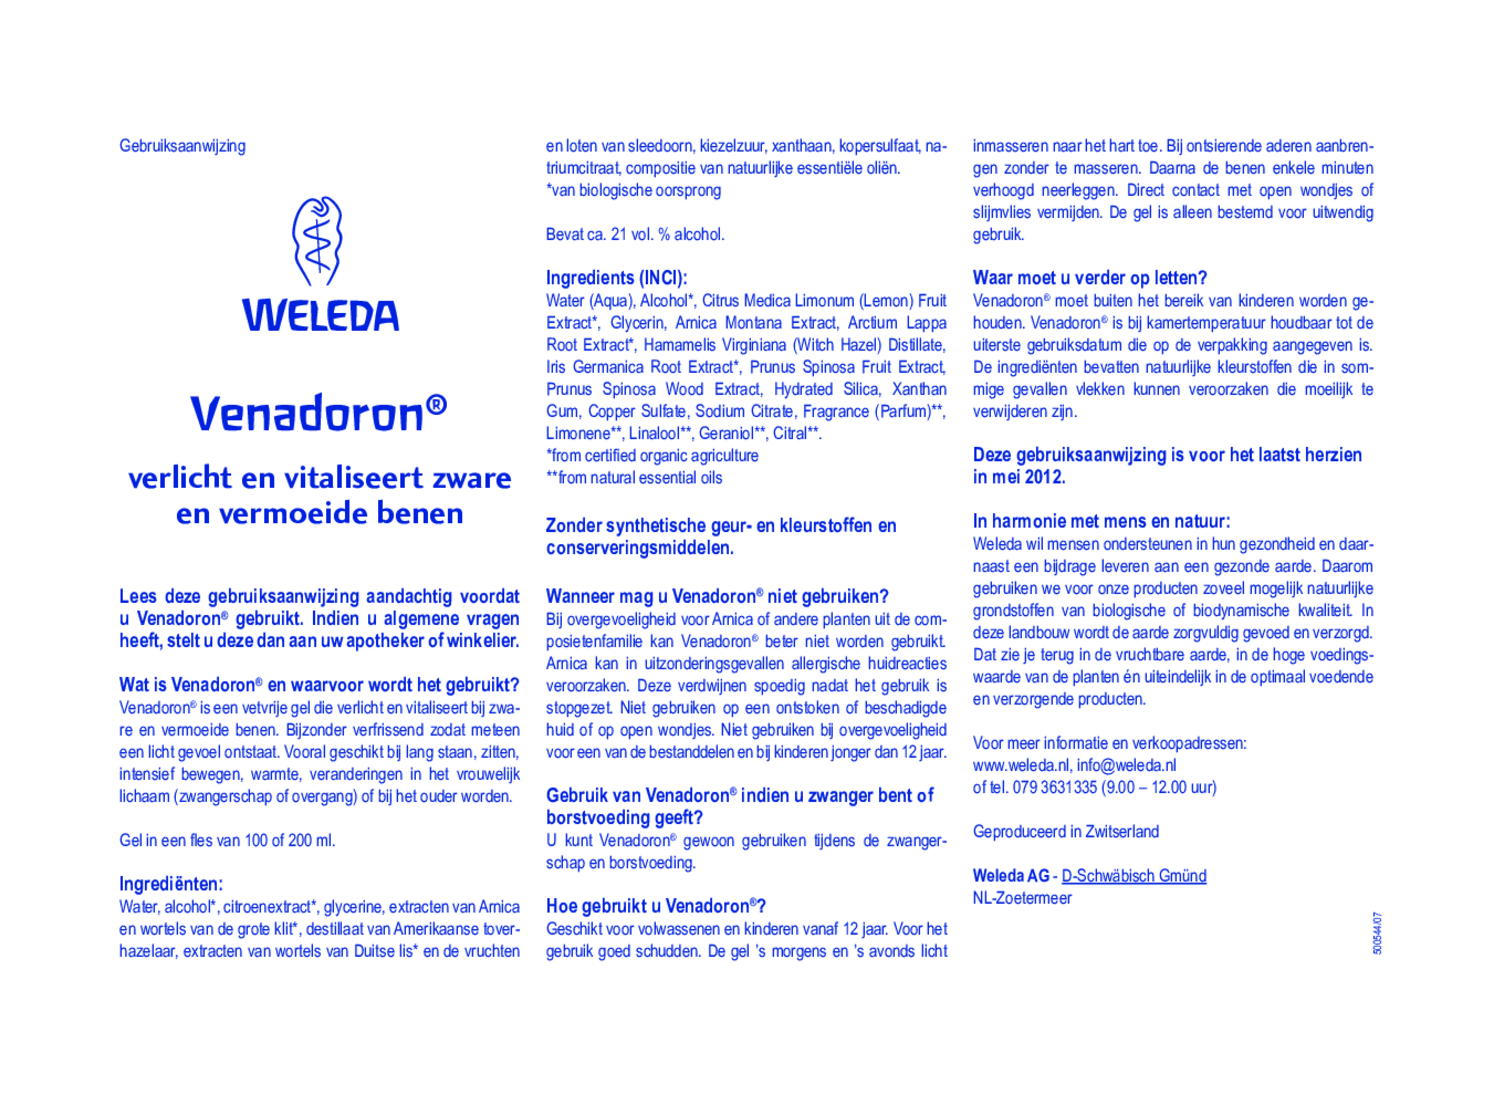 Venadoron afbeelding van document #1, gebruiksaanwijzing